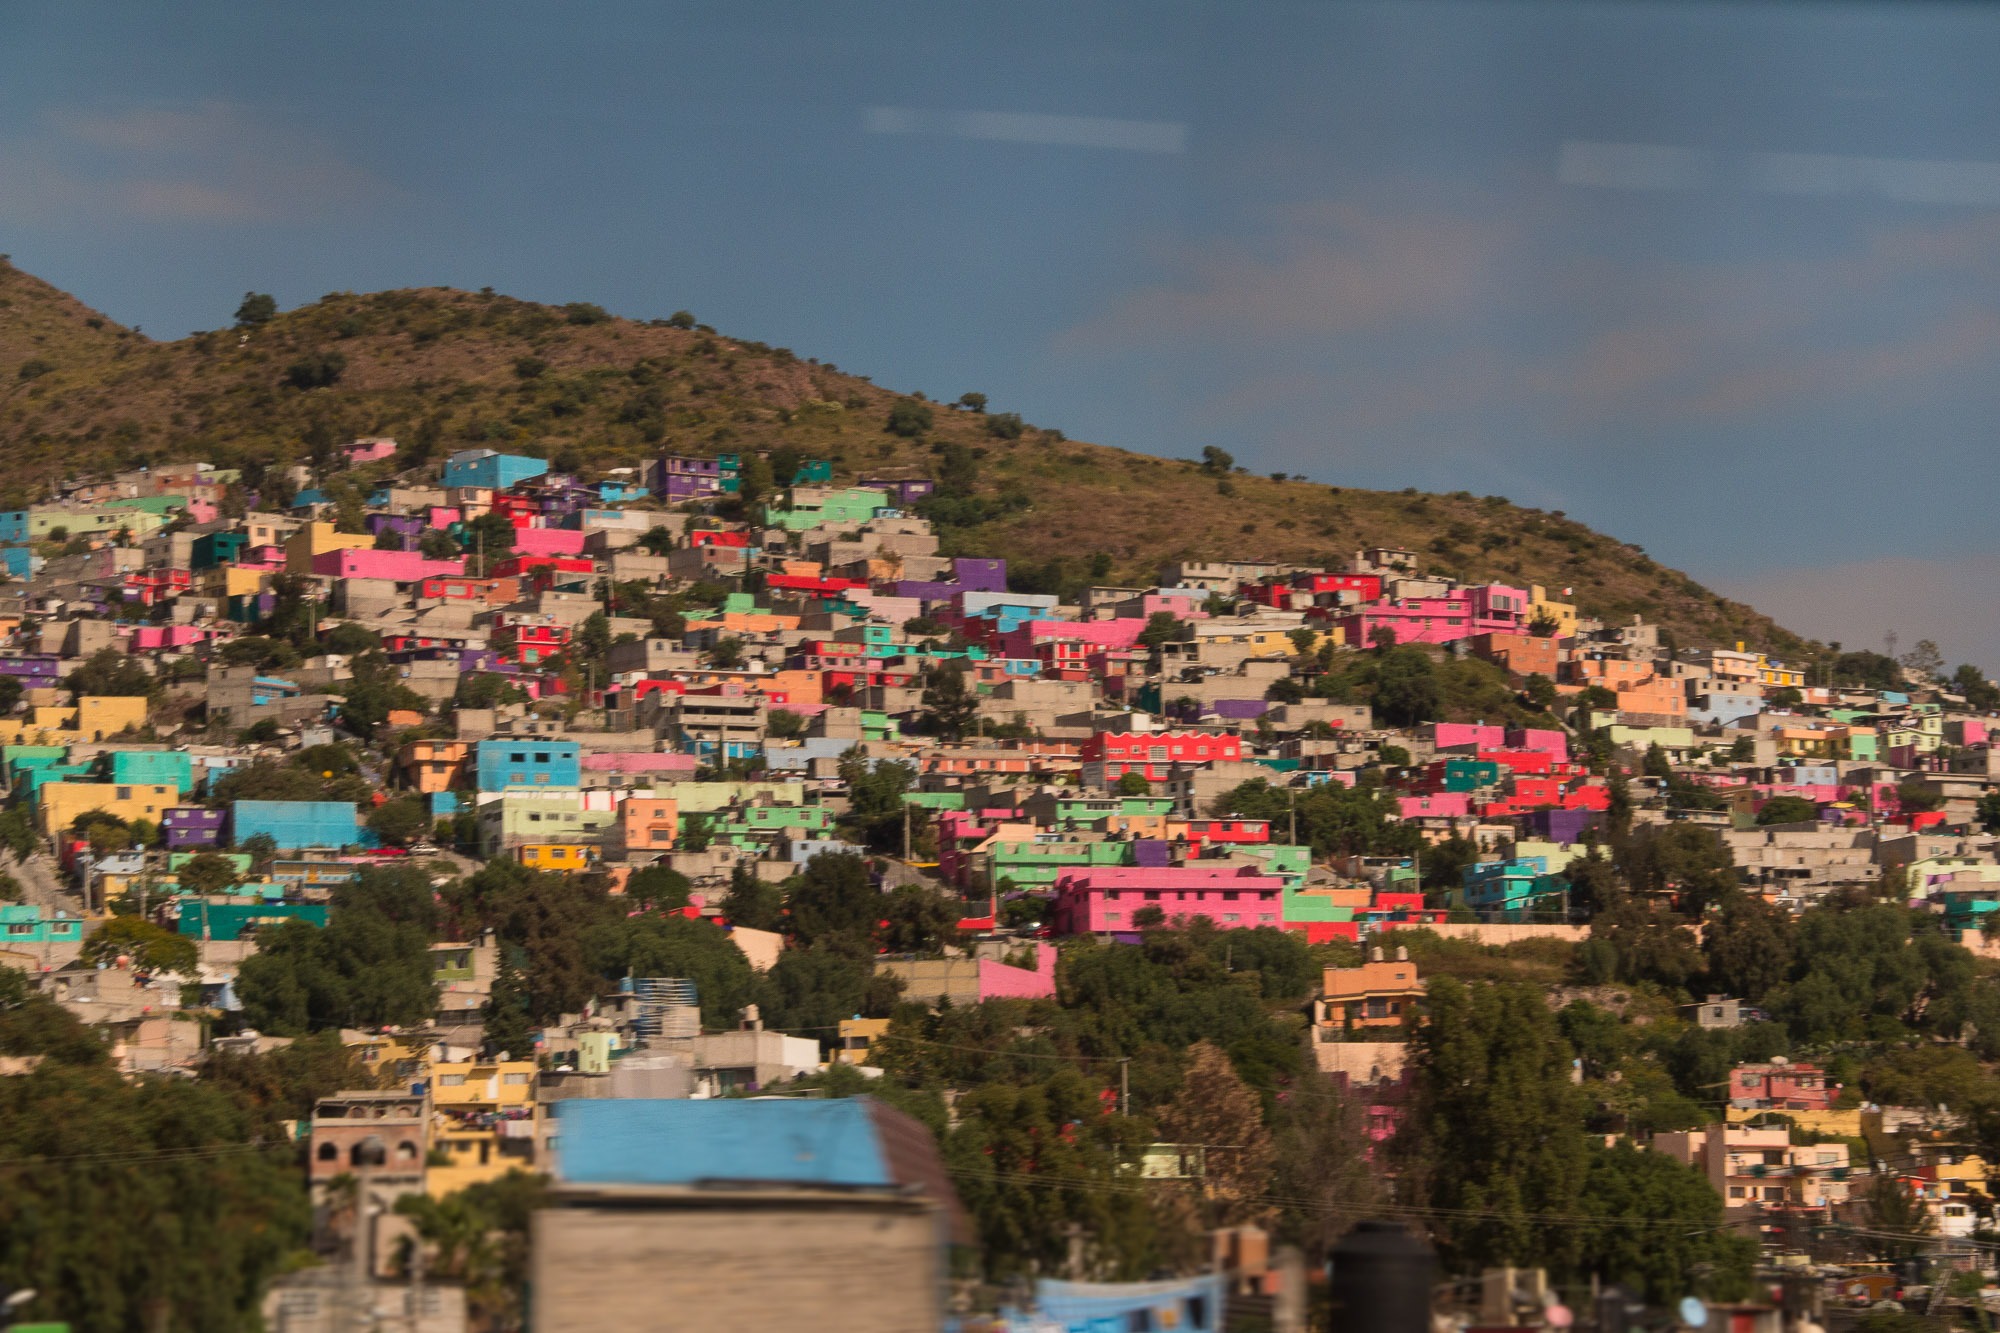 Bairro periférico da Cidade do México, caracterizado pelas fachadas coloridas das casas